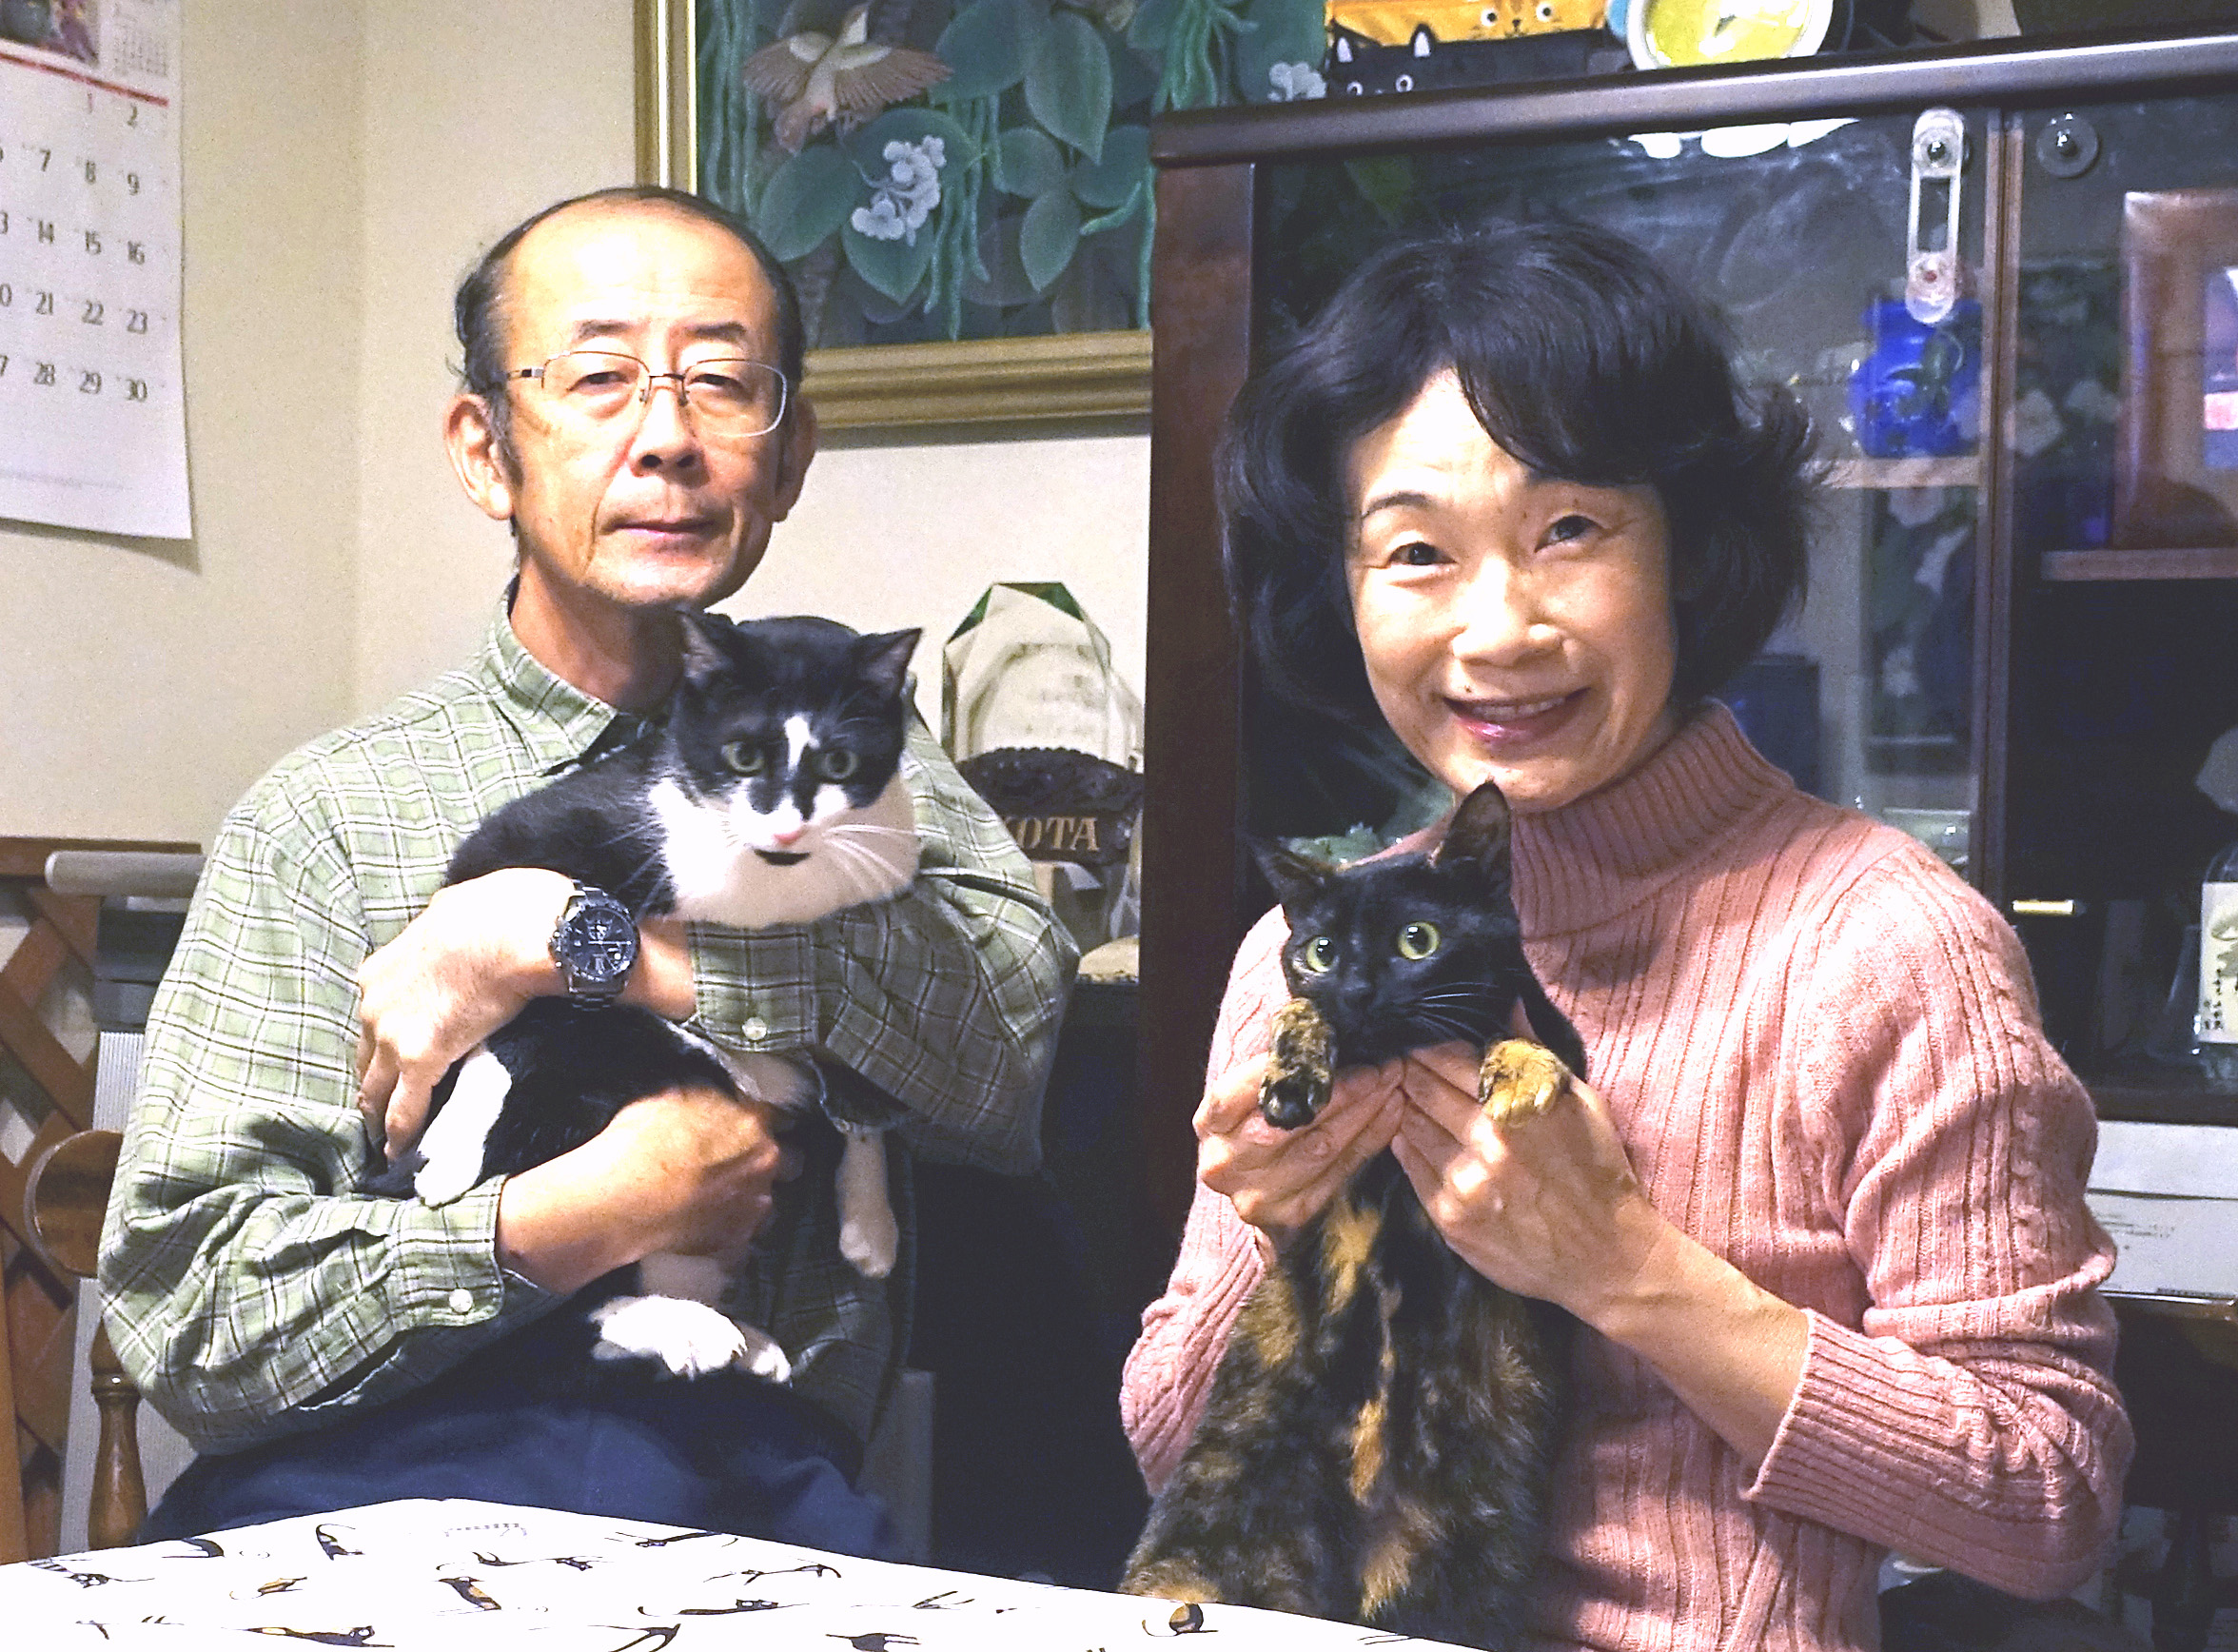  | COURTESY OF KEIKO AND SHINICHI YOKOTA